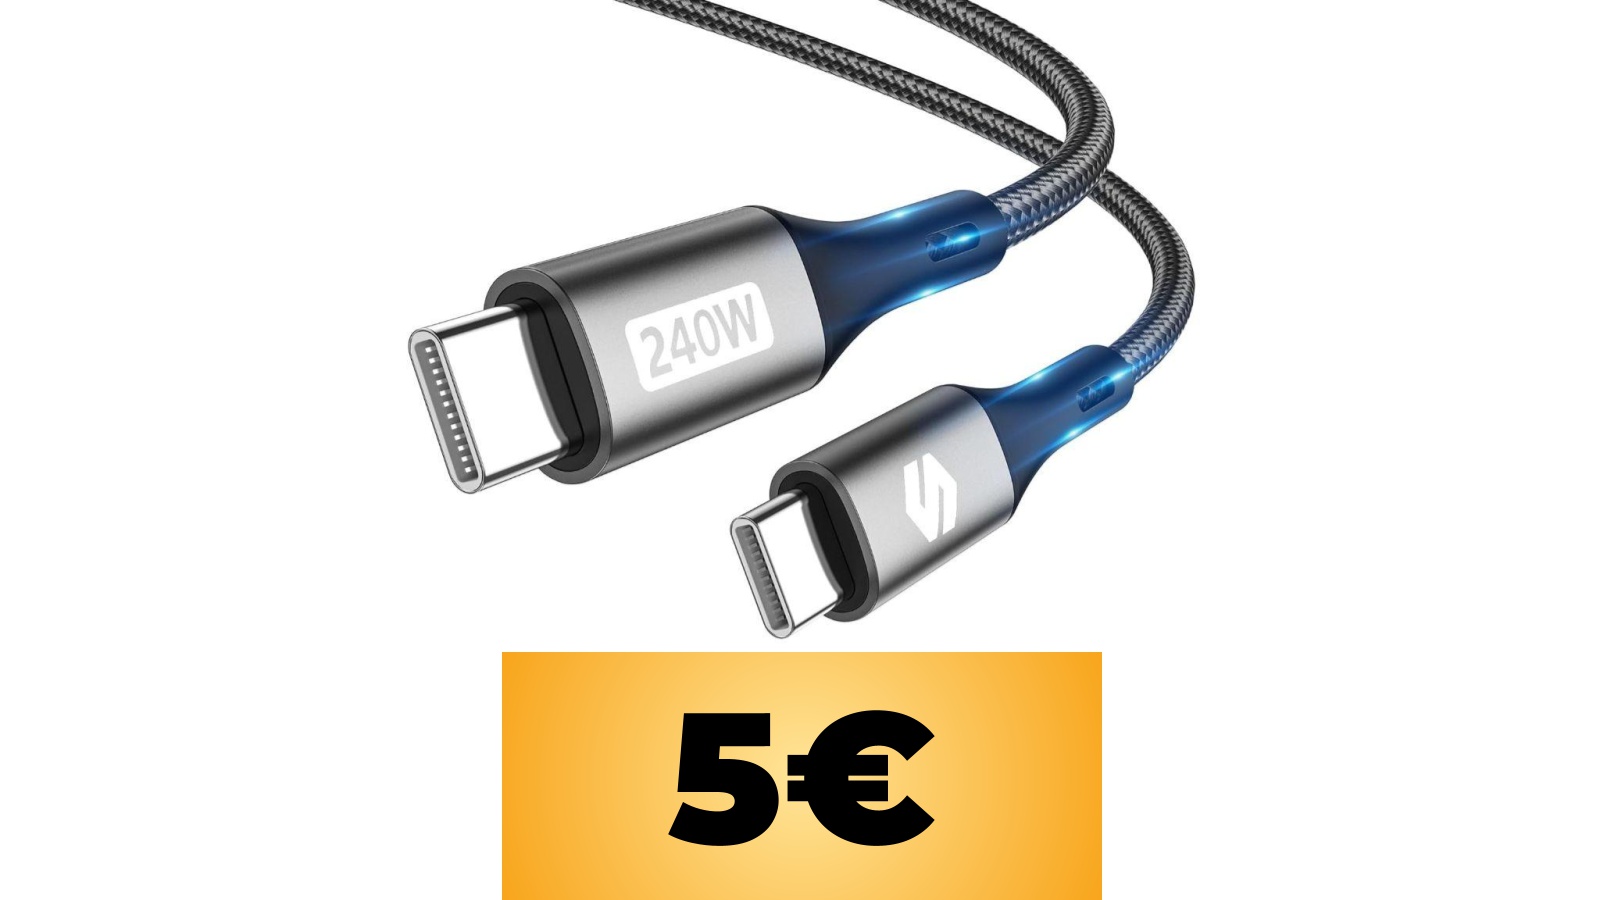 Cavo Silkland 240W di tipo USB-C da 2 metri in sconto con un coupon su Amazon Italia